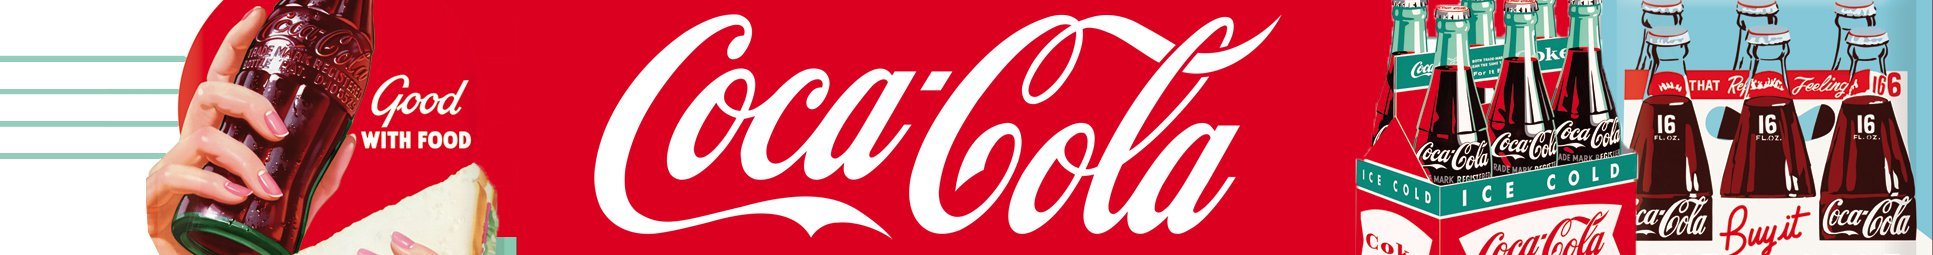 coca-cola-header-kategorie